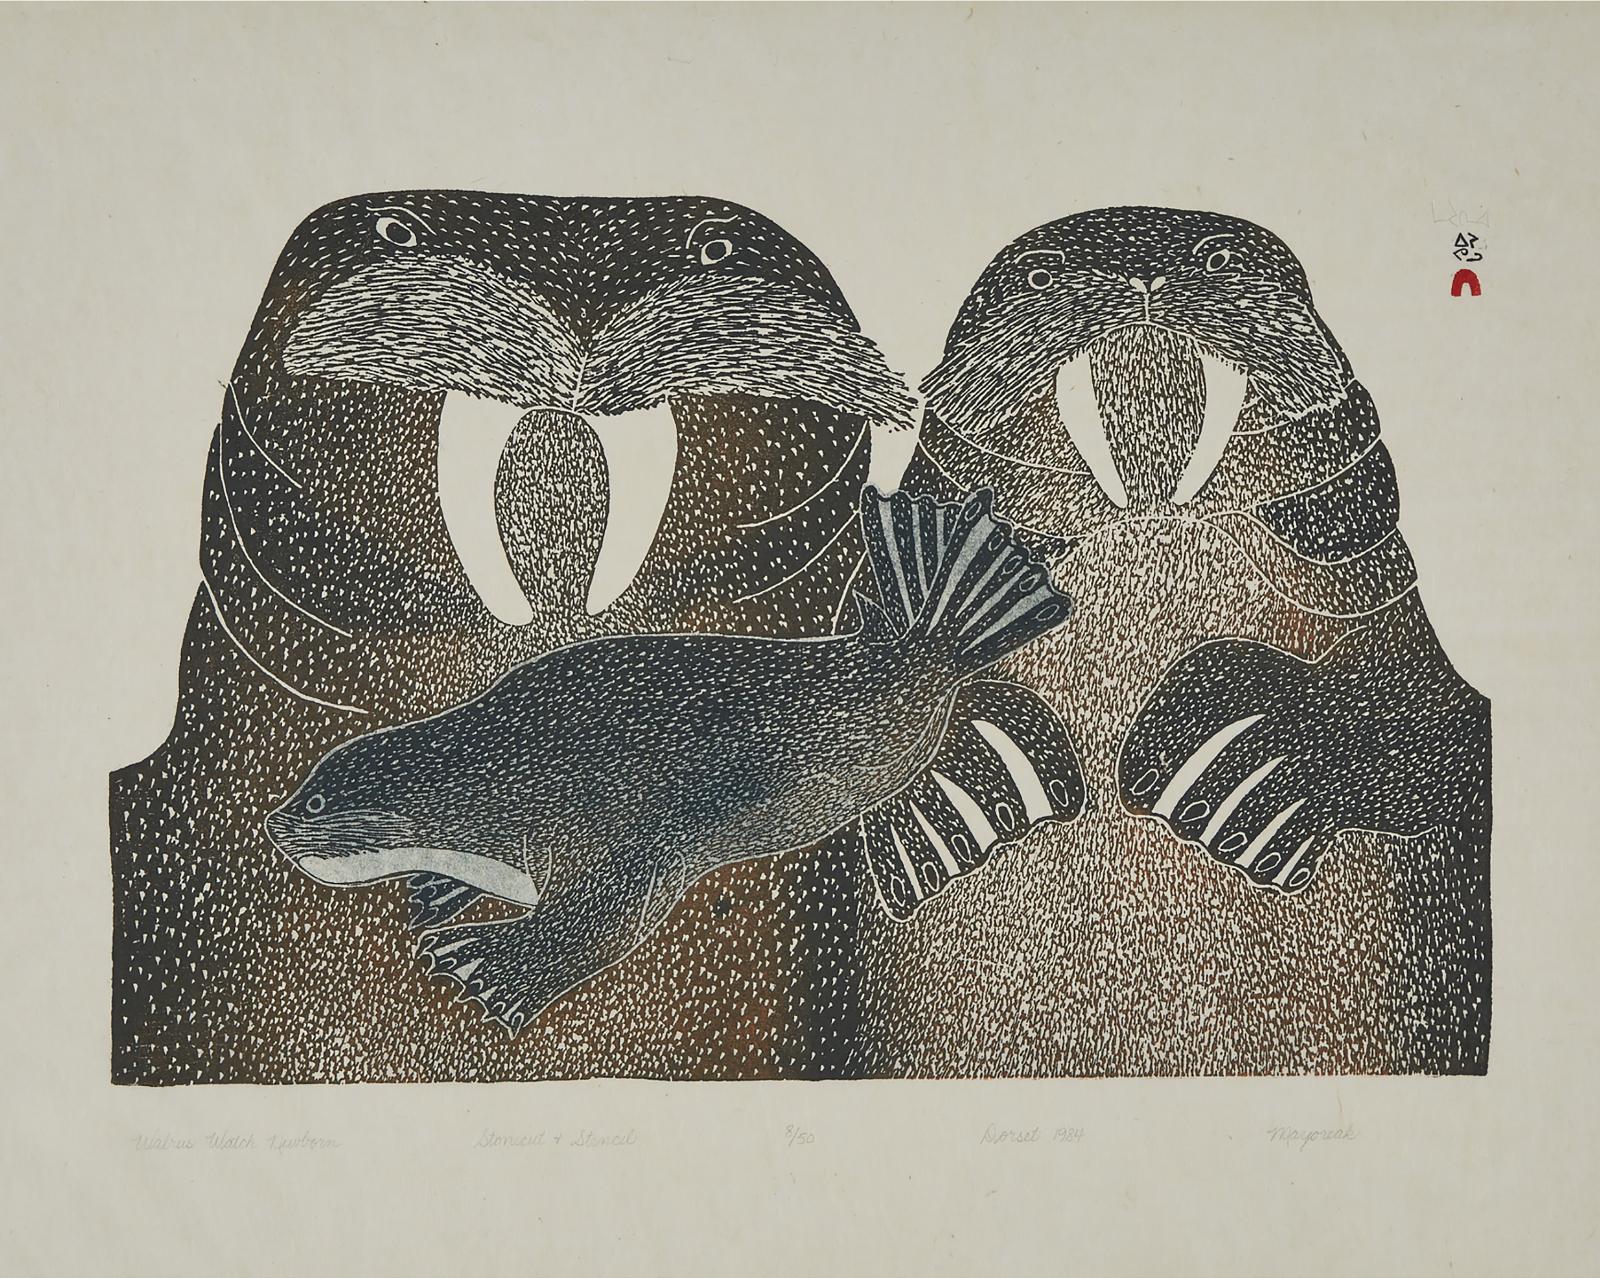 Mayureak Ashoona (1946) - Walrus Watch Newborn